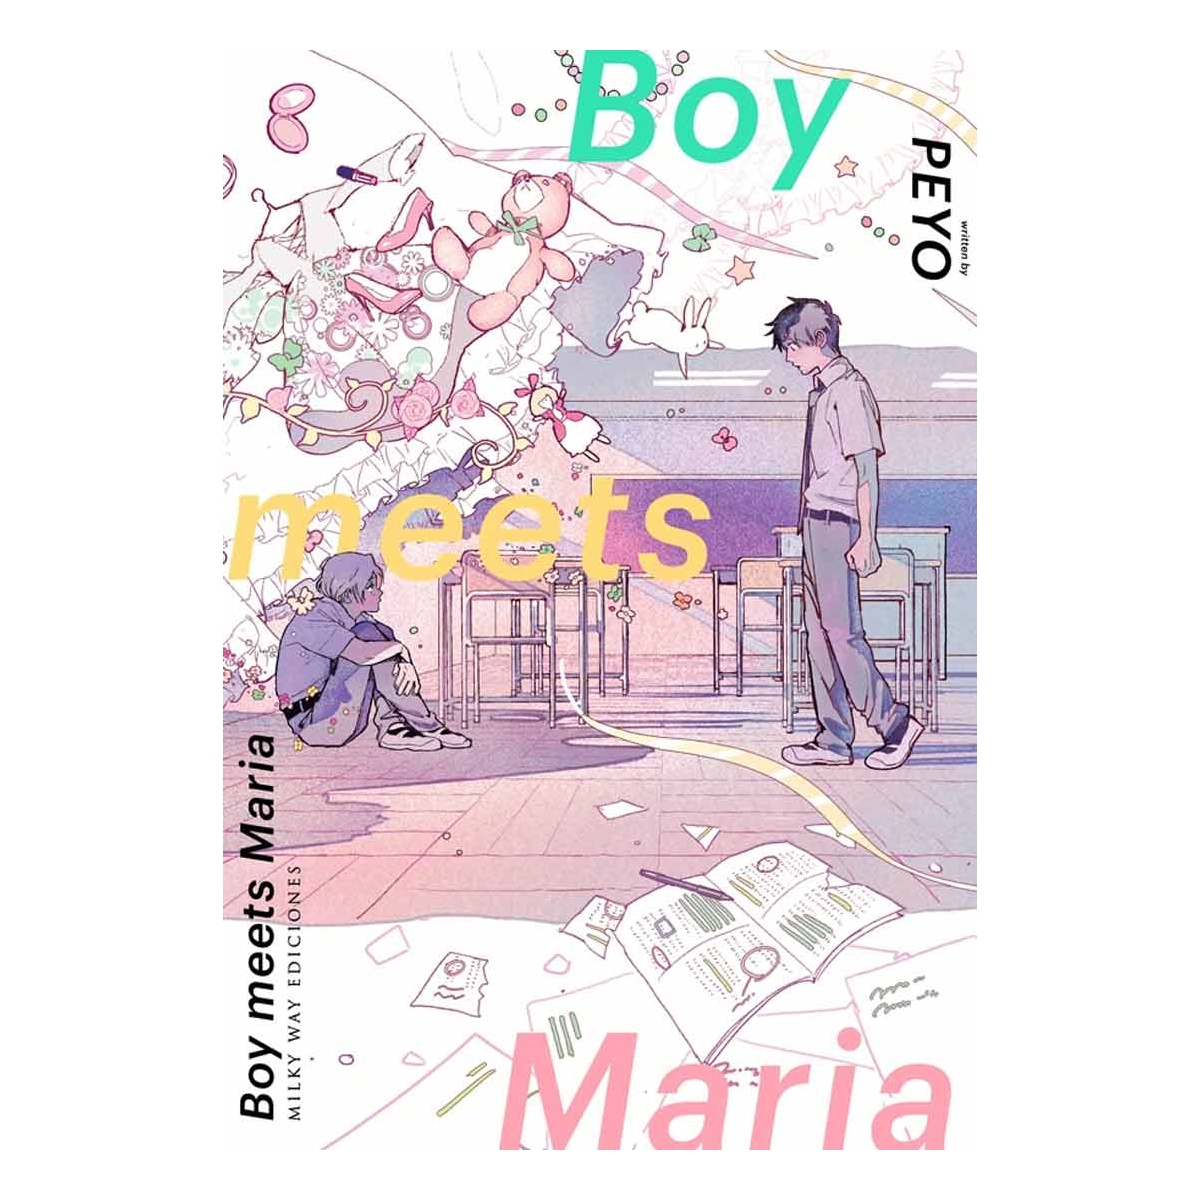 Boy Meets Maria